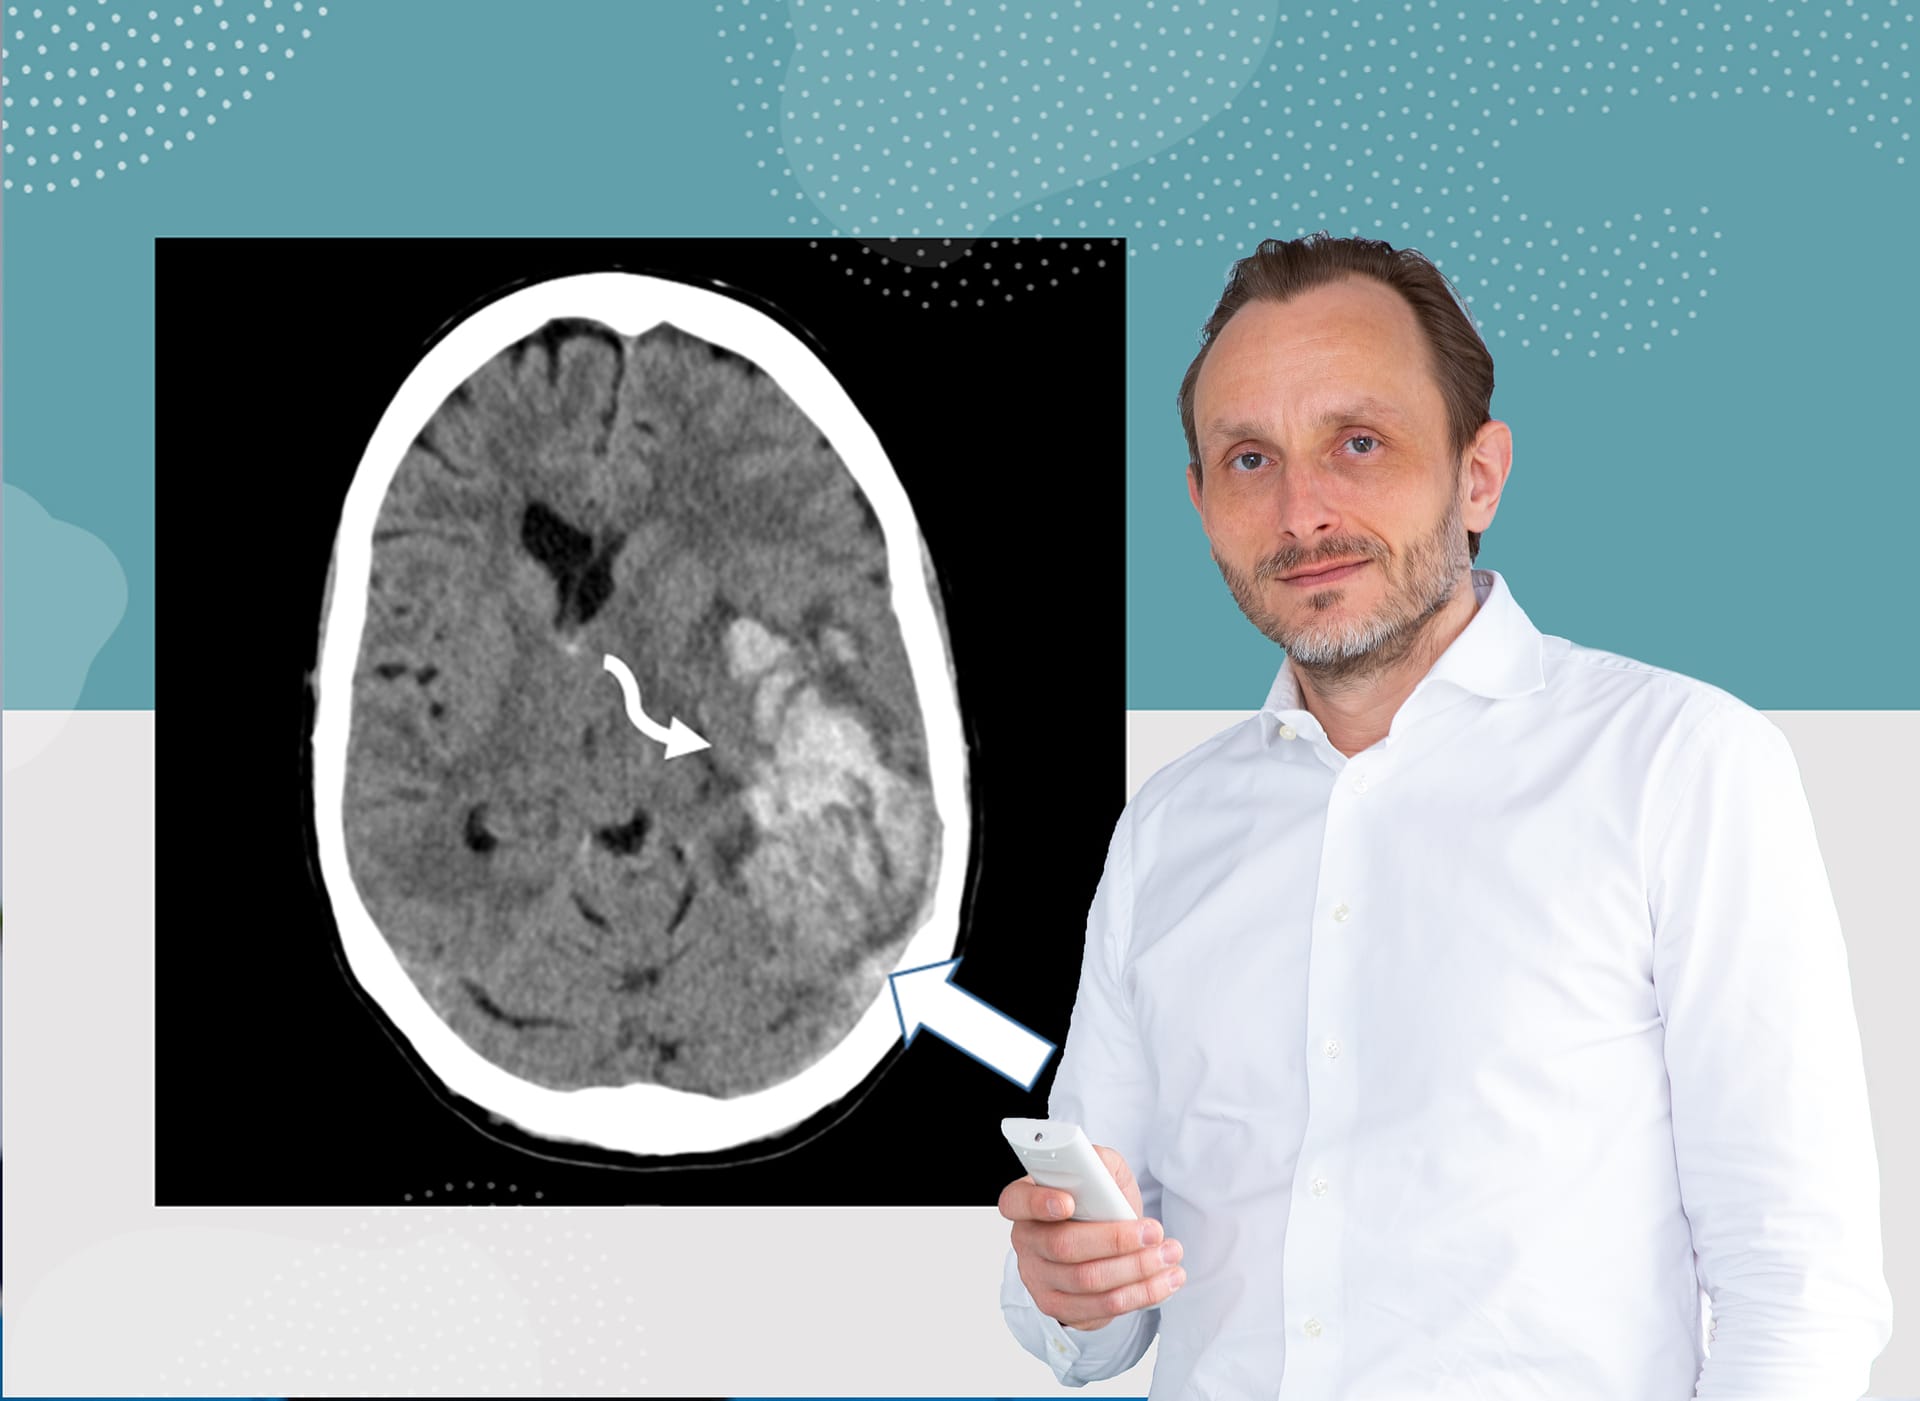 Professor Dr. Andreas Tiede mit einer computertomographischen Aufnahme: Der weiße Pfeil deutet auf eine Hirnvenenthrombose (hellgrau) hin.